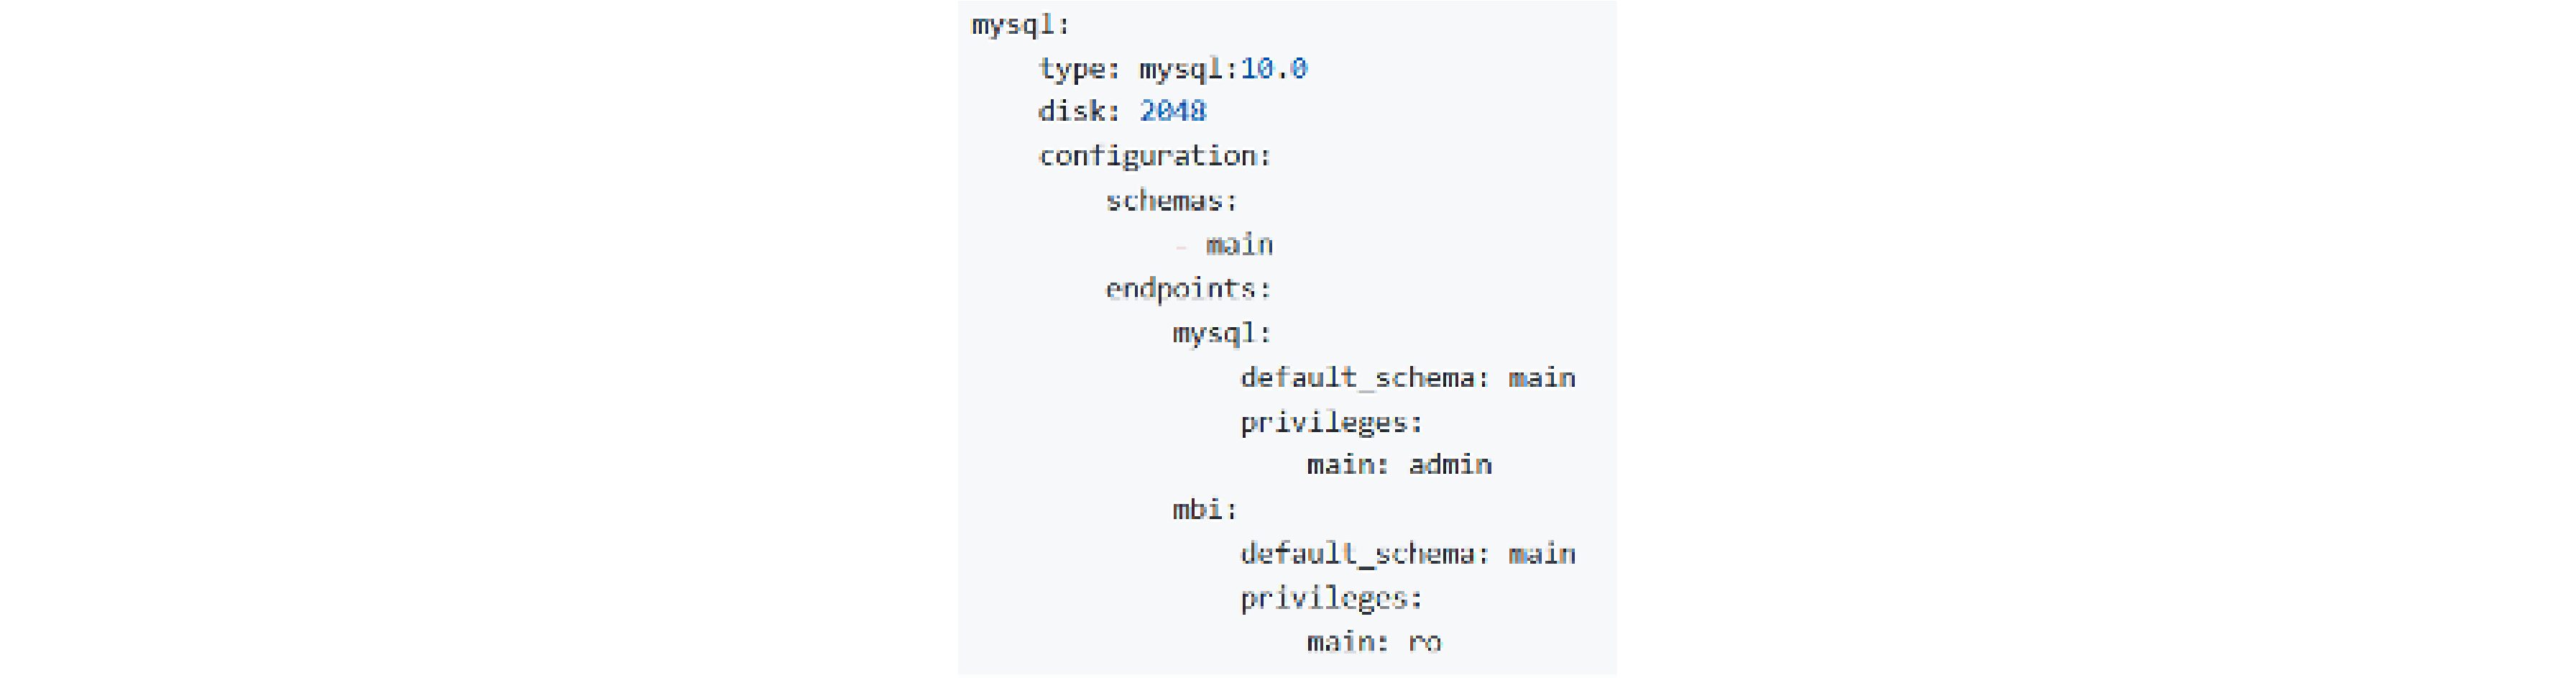 Magento BI MySQL Credentials Configuration in .magento/services.yaml File